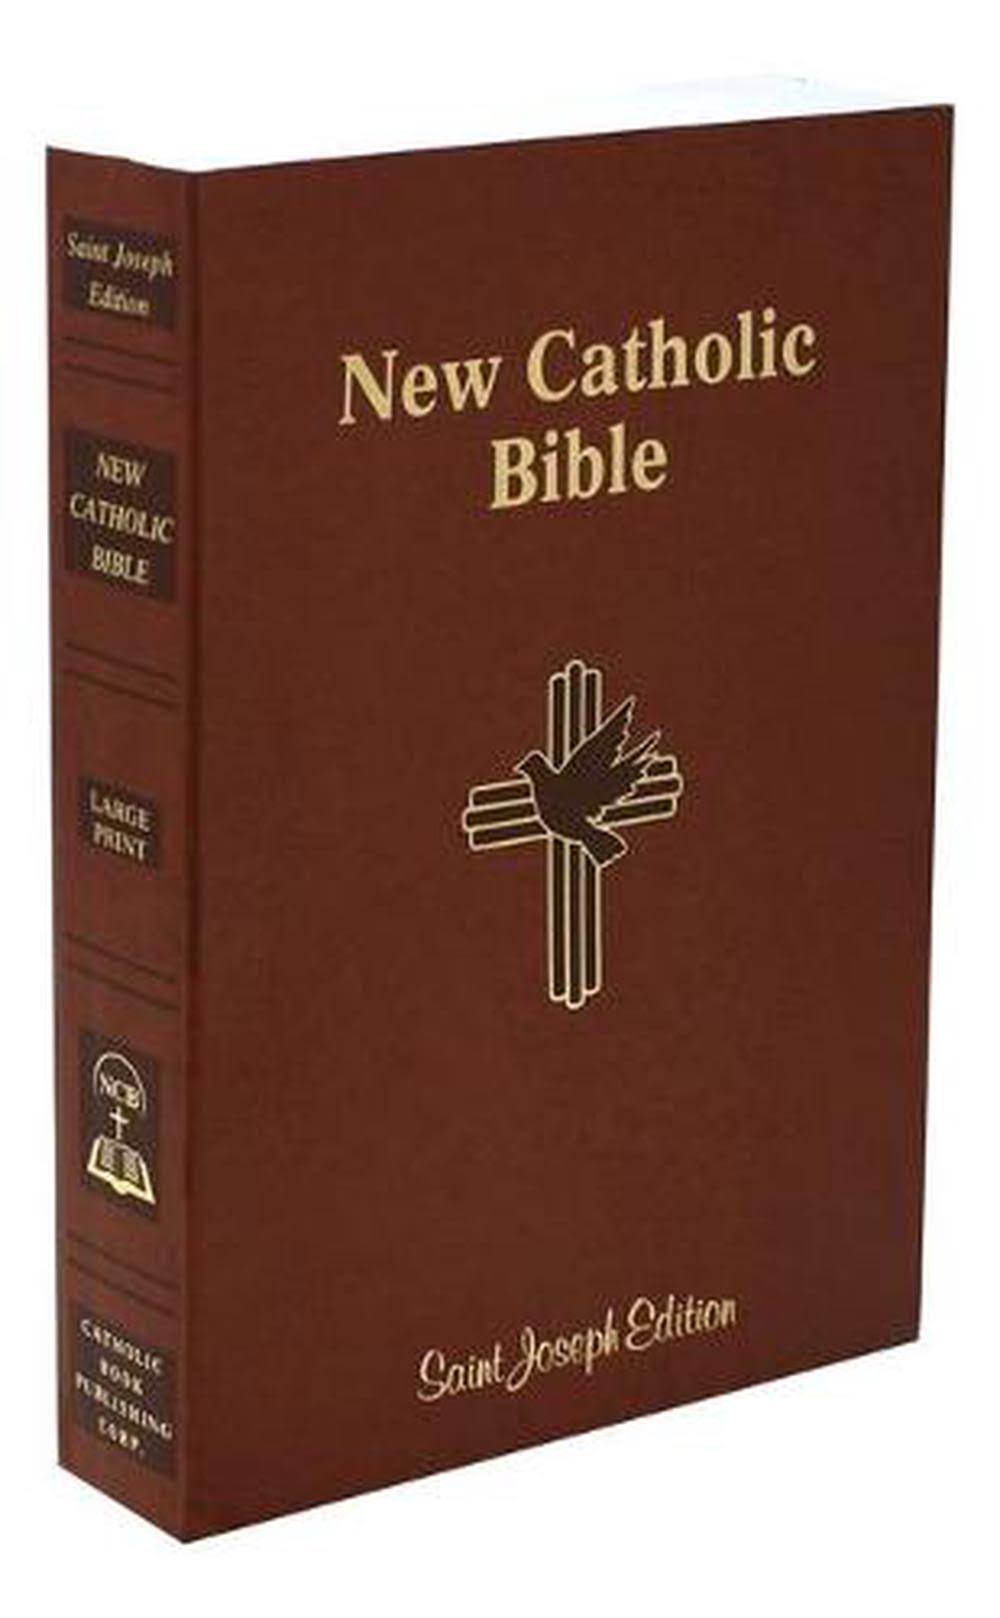 New Catholic Bible (614/04)